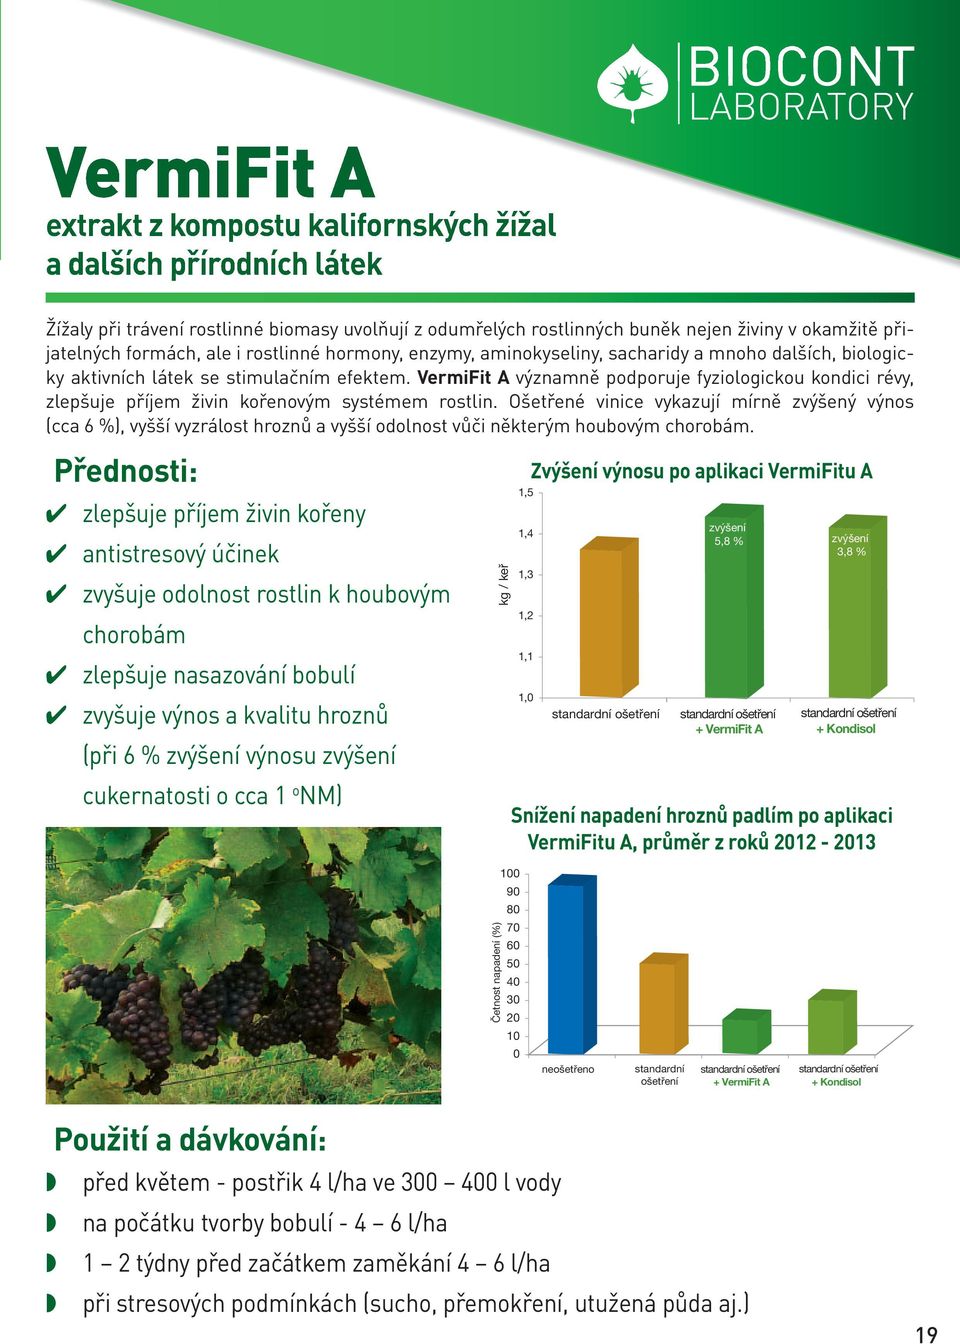 VermiFit A významně podporuje fyziologickou kondici révy, zlepšuje příjem živin kořenovým systémem rostlin.